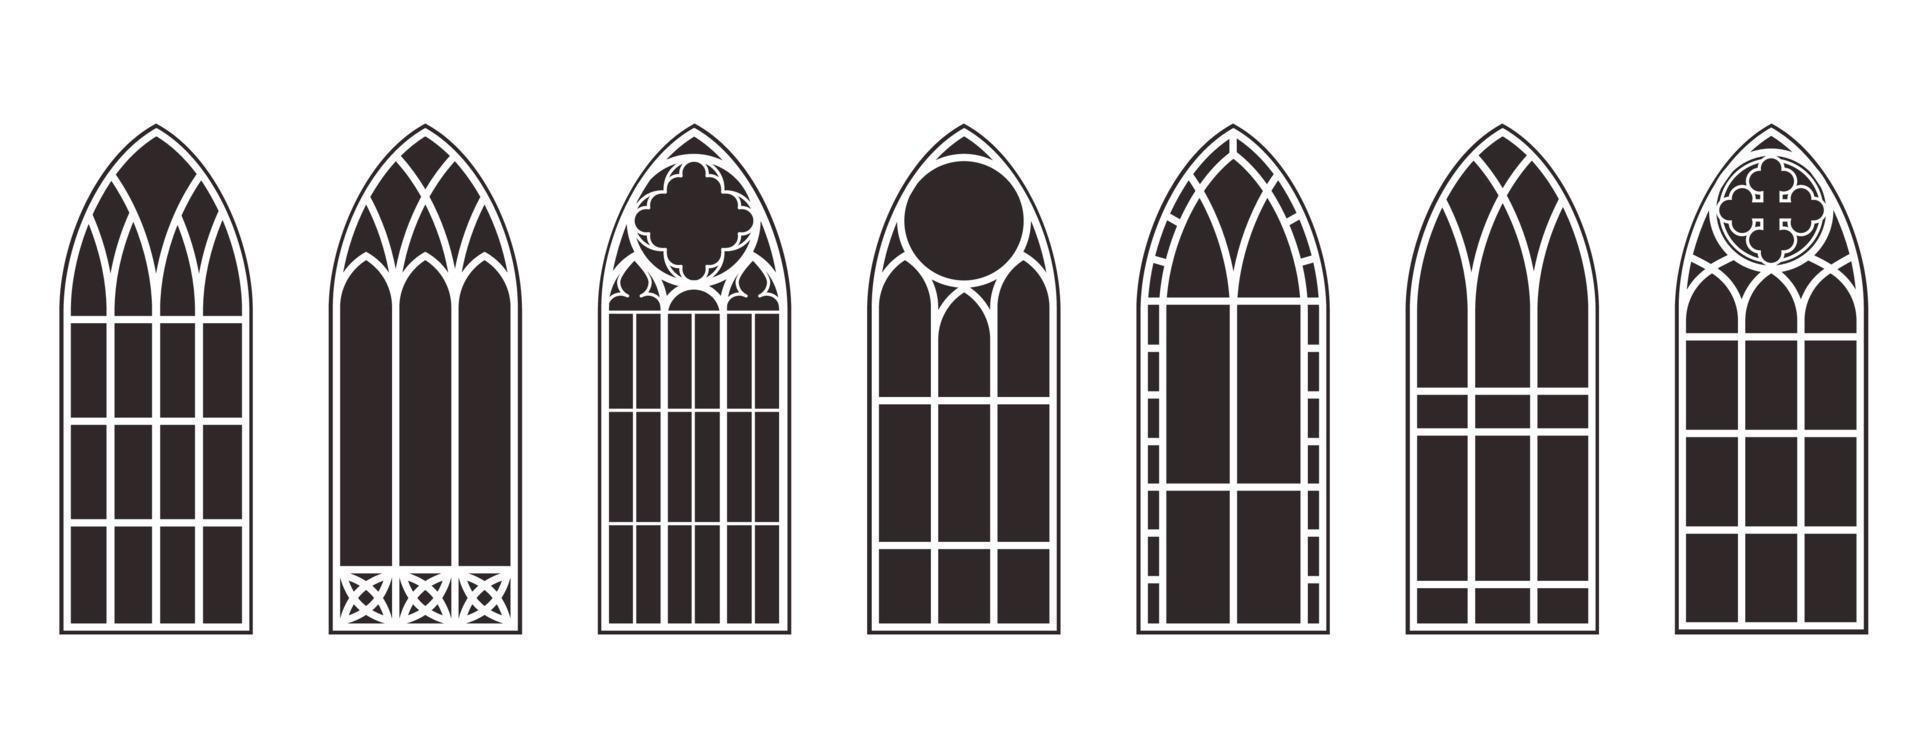 Umrissset für gotische Fenster. Silhouette von alten Kirchenrahmen aus Buntglas. Element der traditionellen europäischen Architektur. Vektor-Illustration vektor